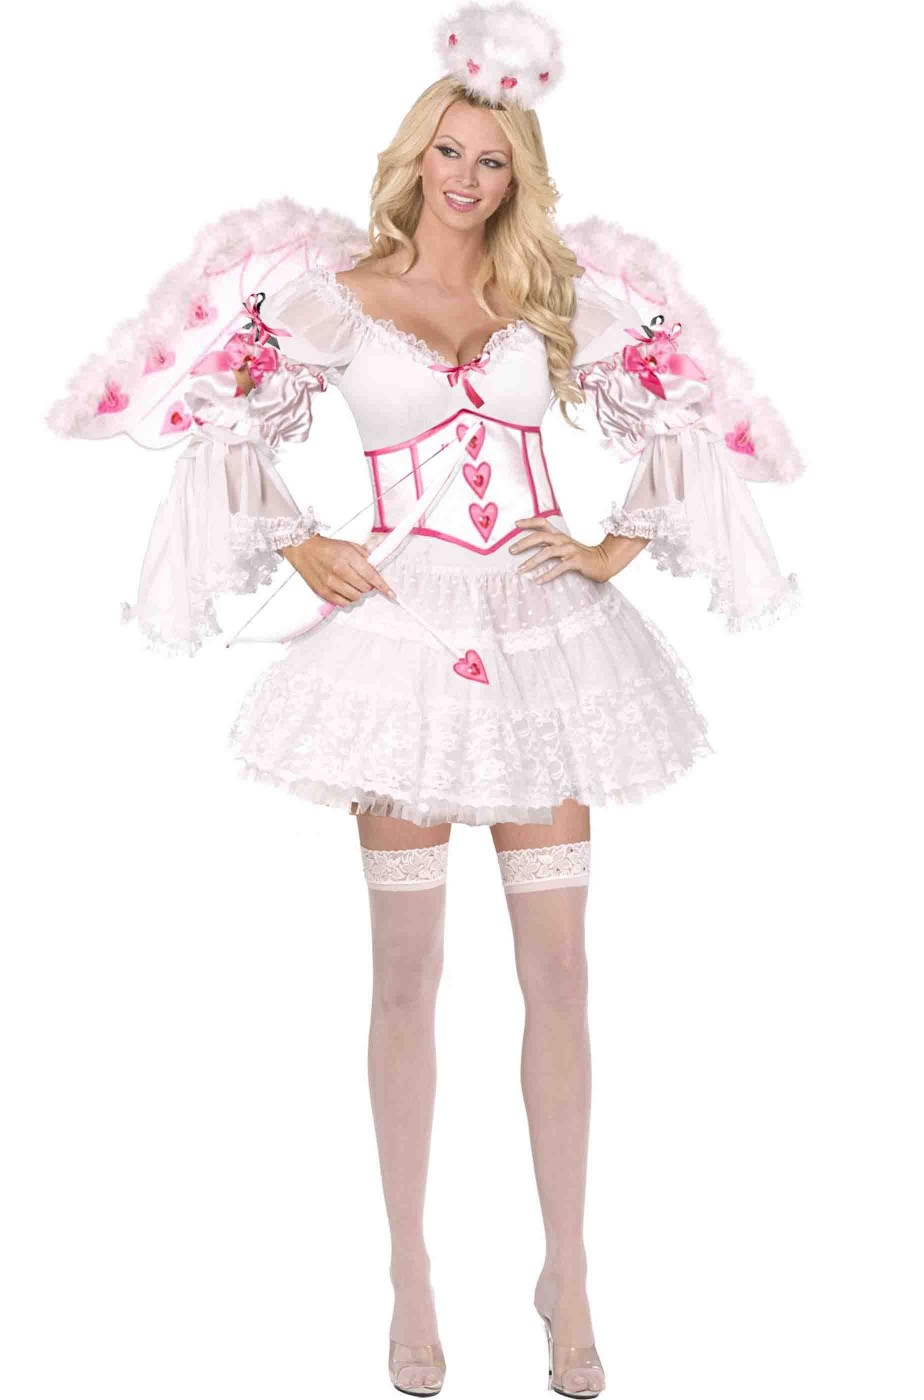 Costume Dea dell'Amore Cupido alta qualita' bianco e rosa